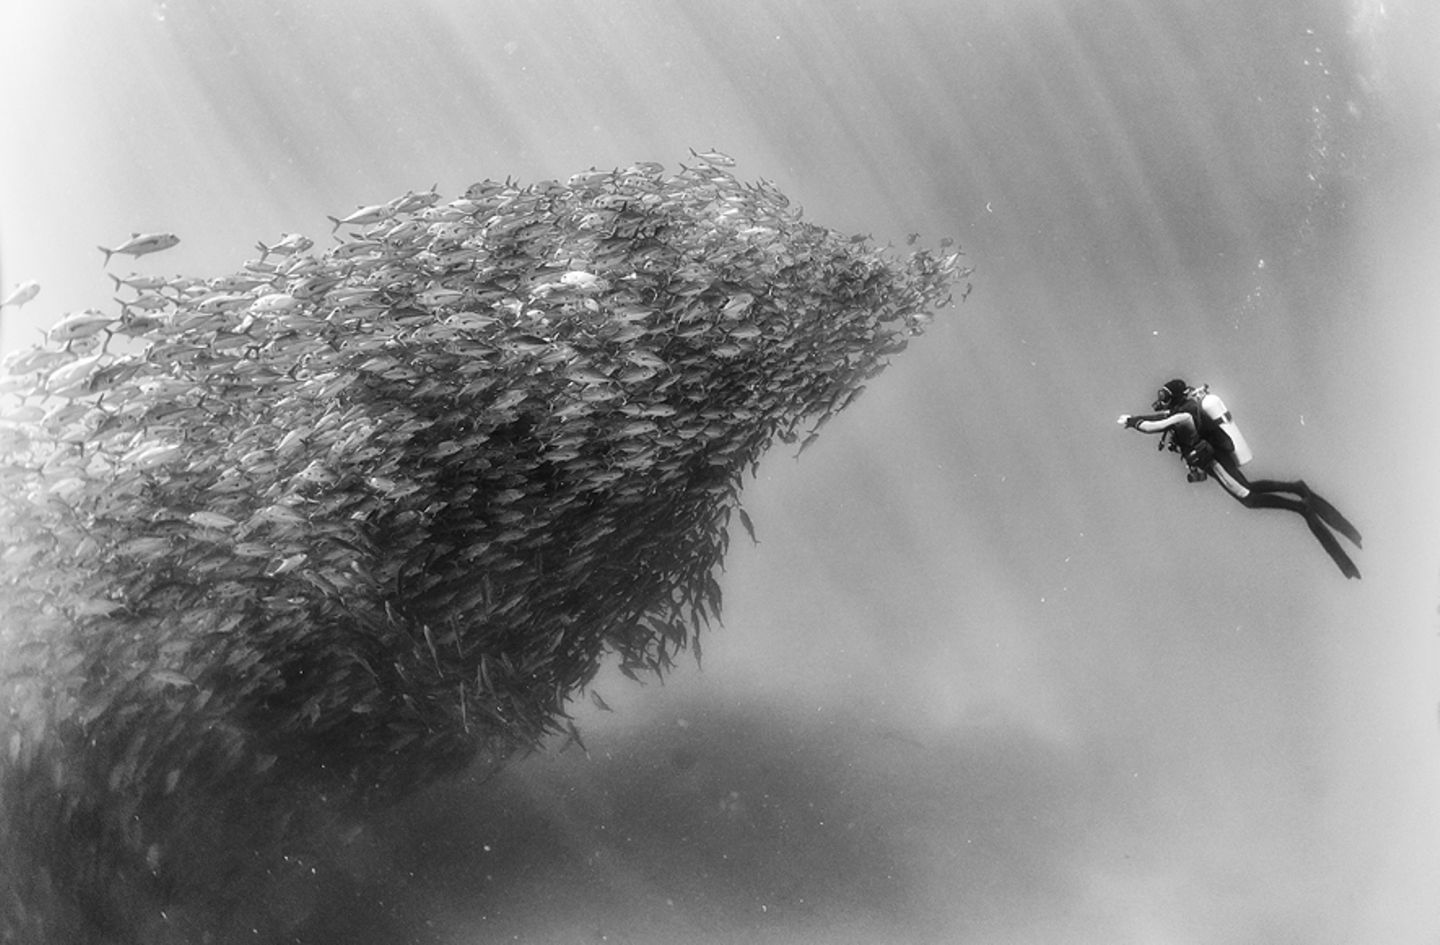 Für mehr Aufmerksamkeit: Fotograf begibt sich in gigantische Fischschwärme